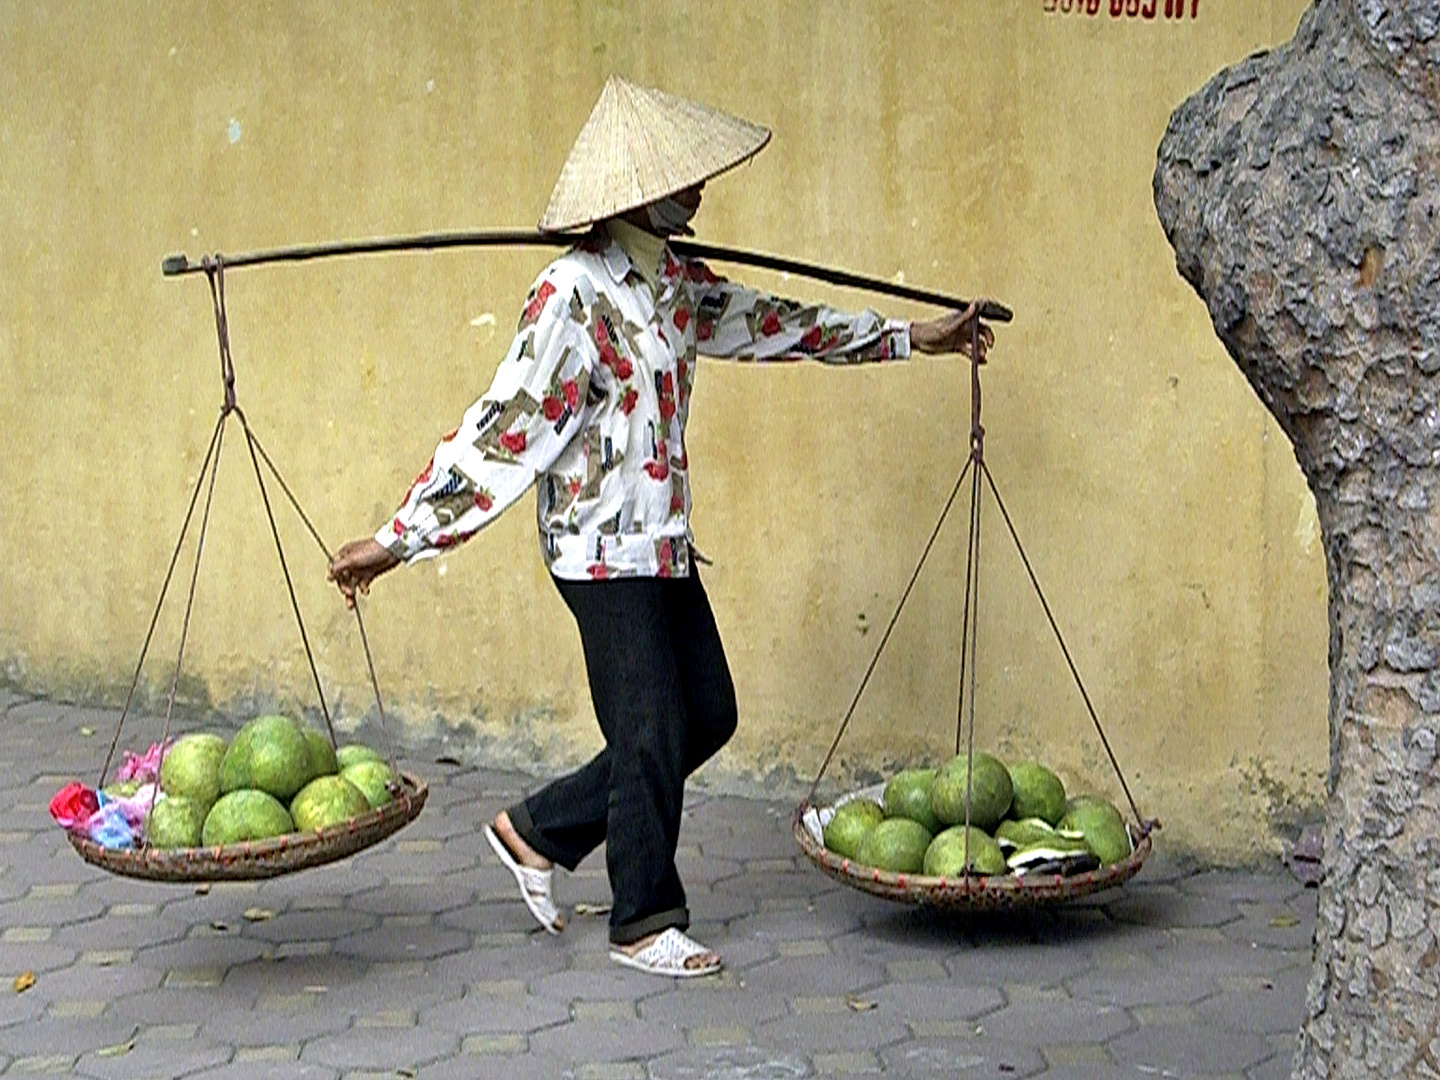 Vietnamese transportation 1